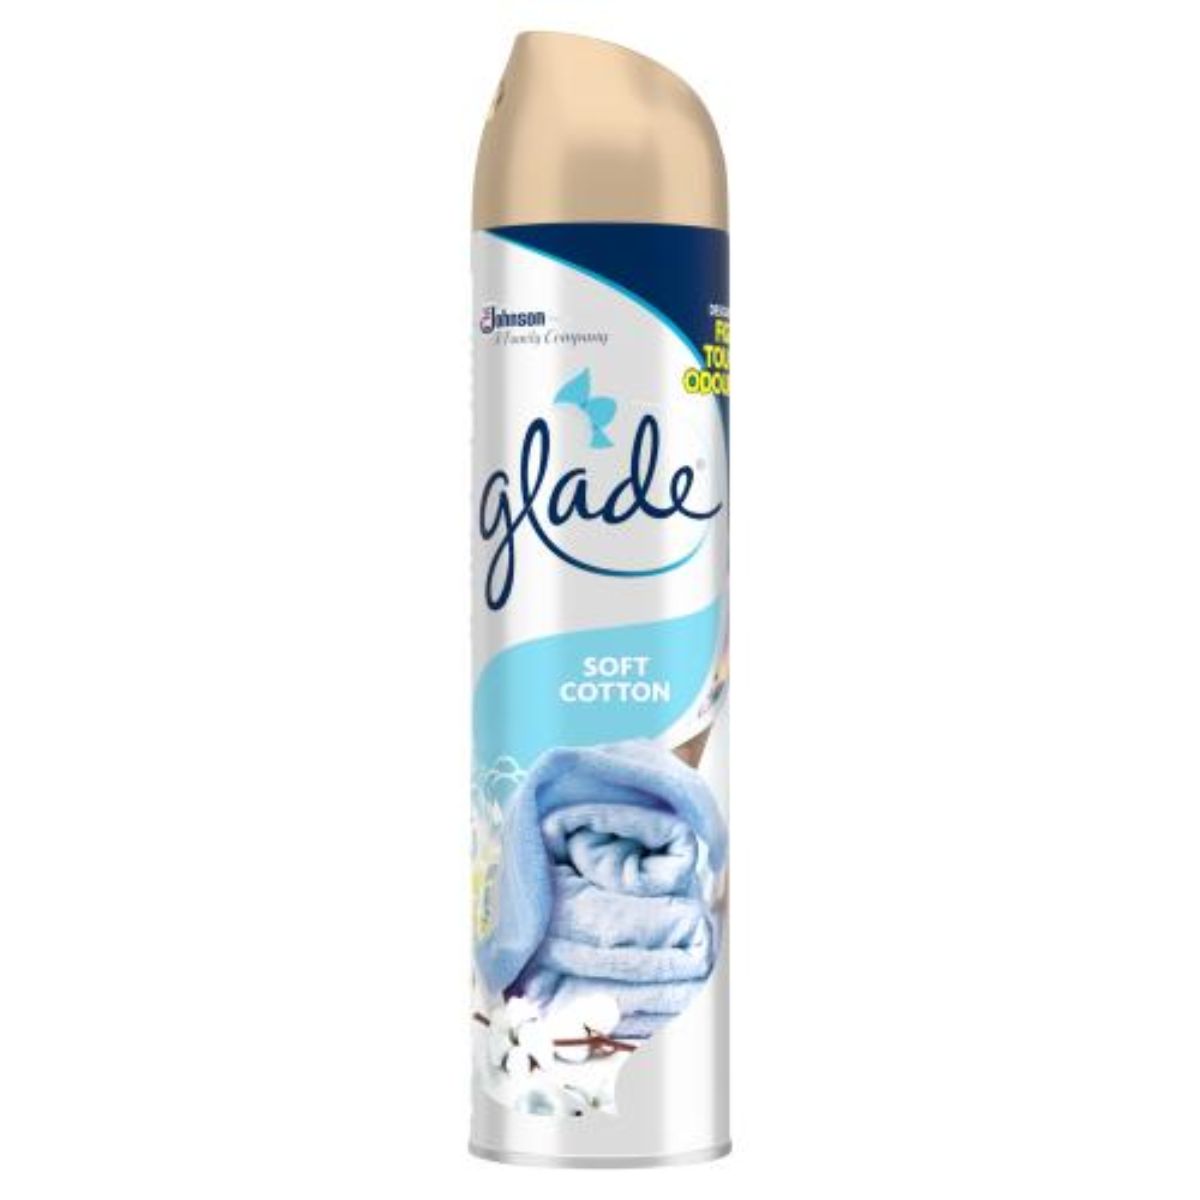 Glade - Aerosol Air Freshener Soft Cotton - 300ml in a white bottle.